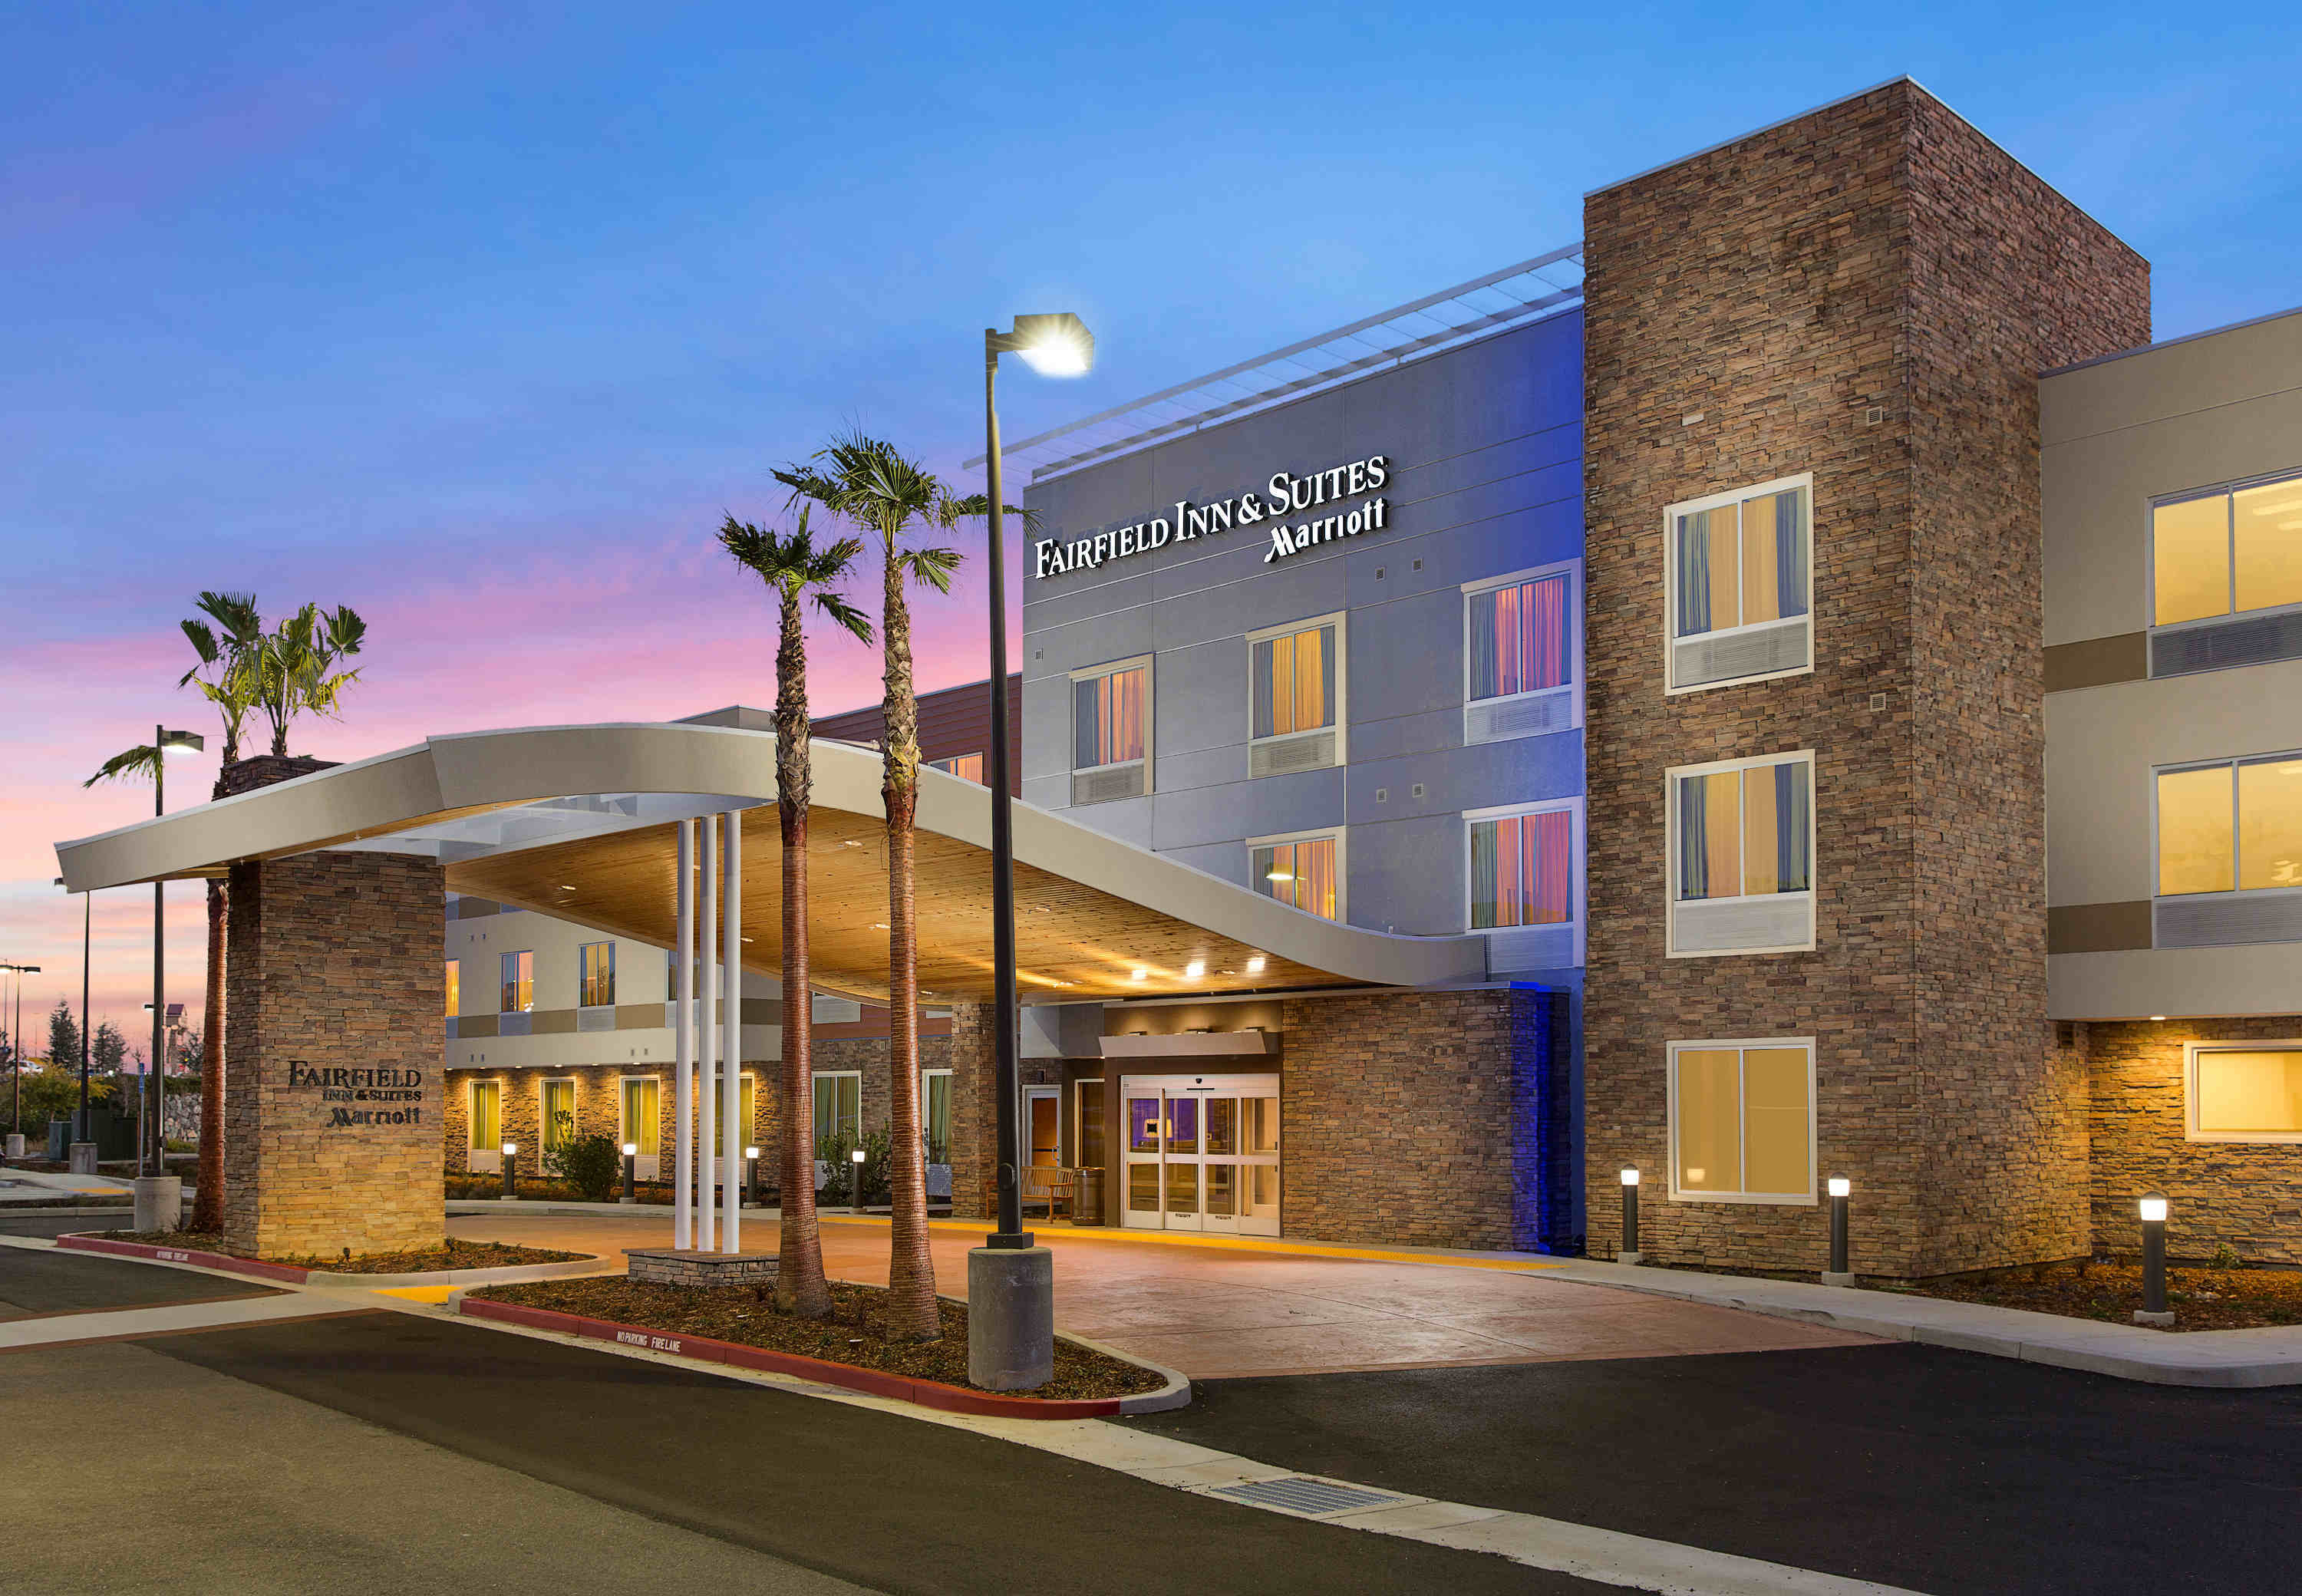 Photo of Fairfield Inn & Suites by Marriott Sacramento Folsom, Folsom, CA